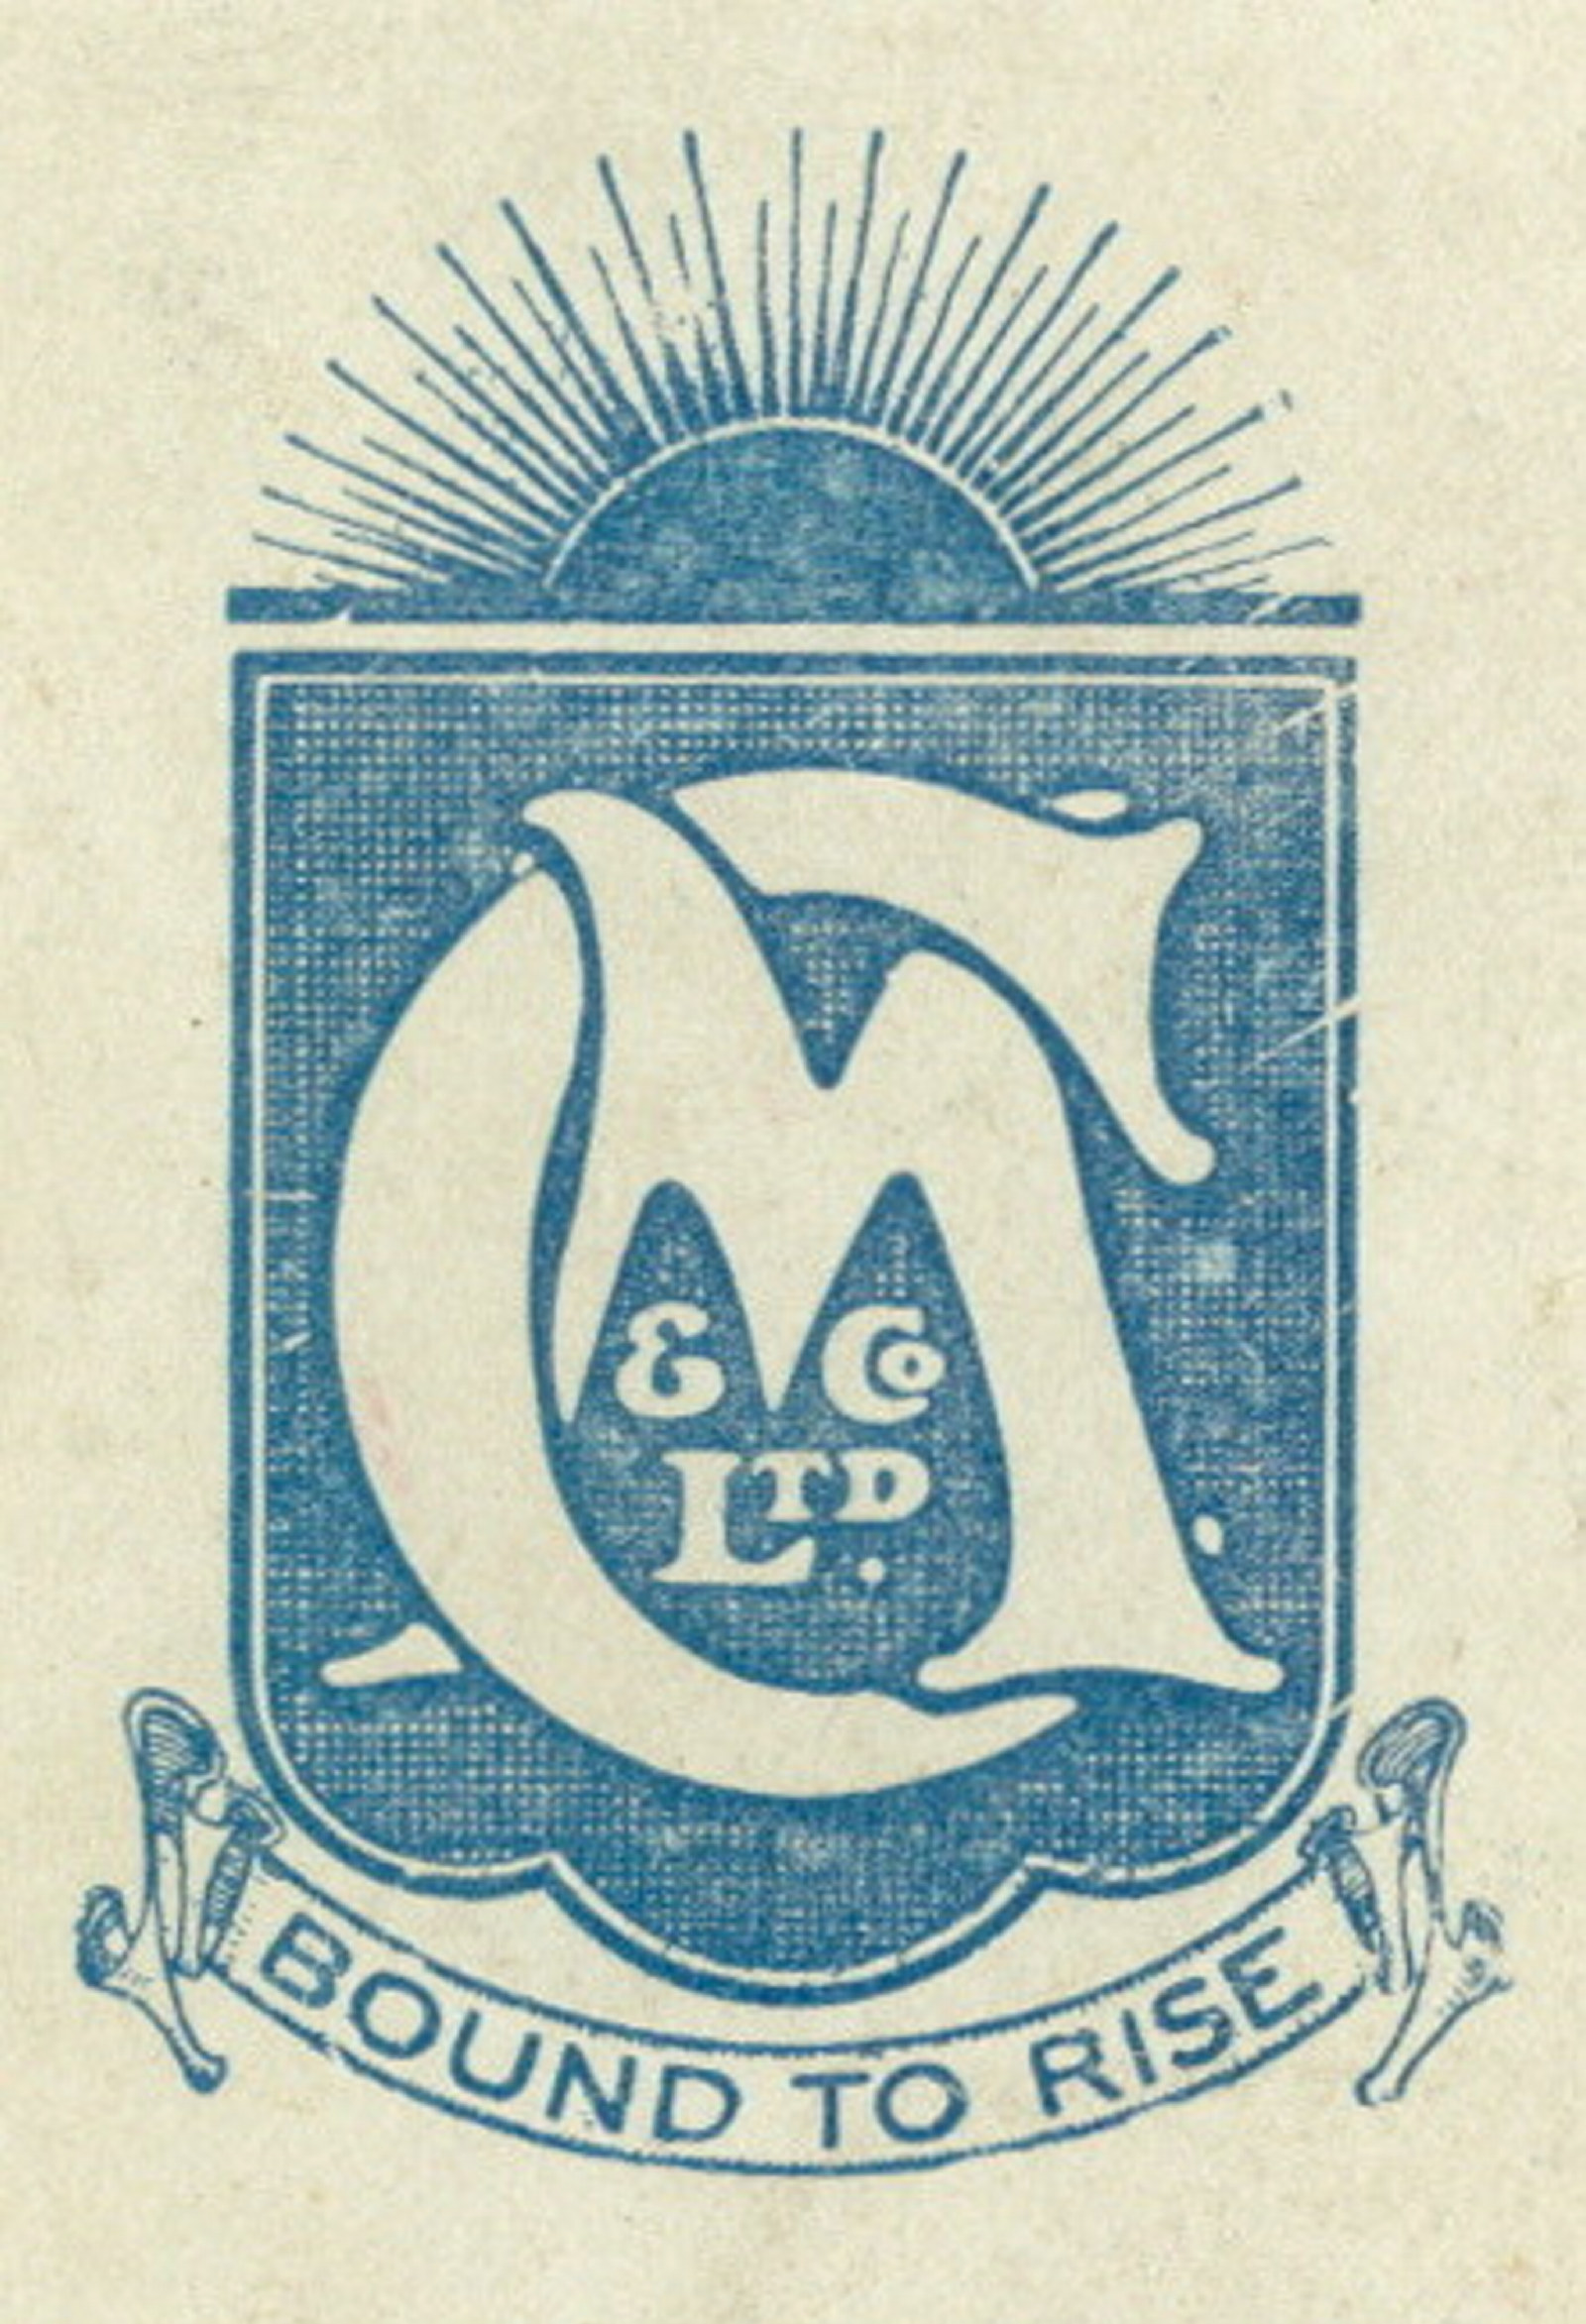 Blue logo on white background.